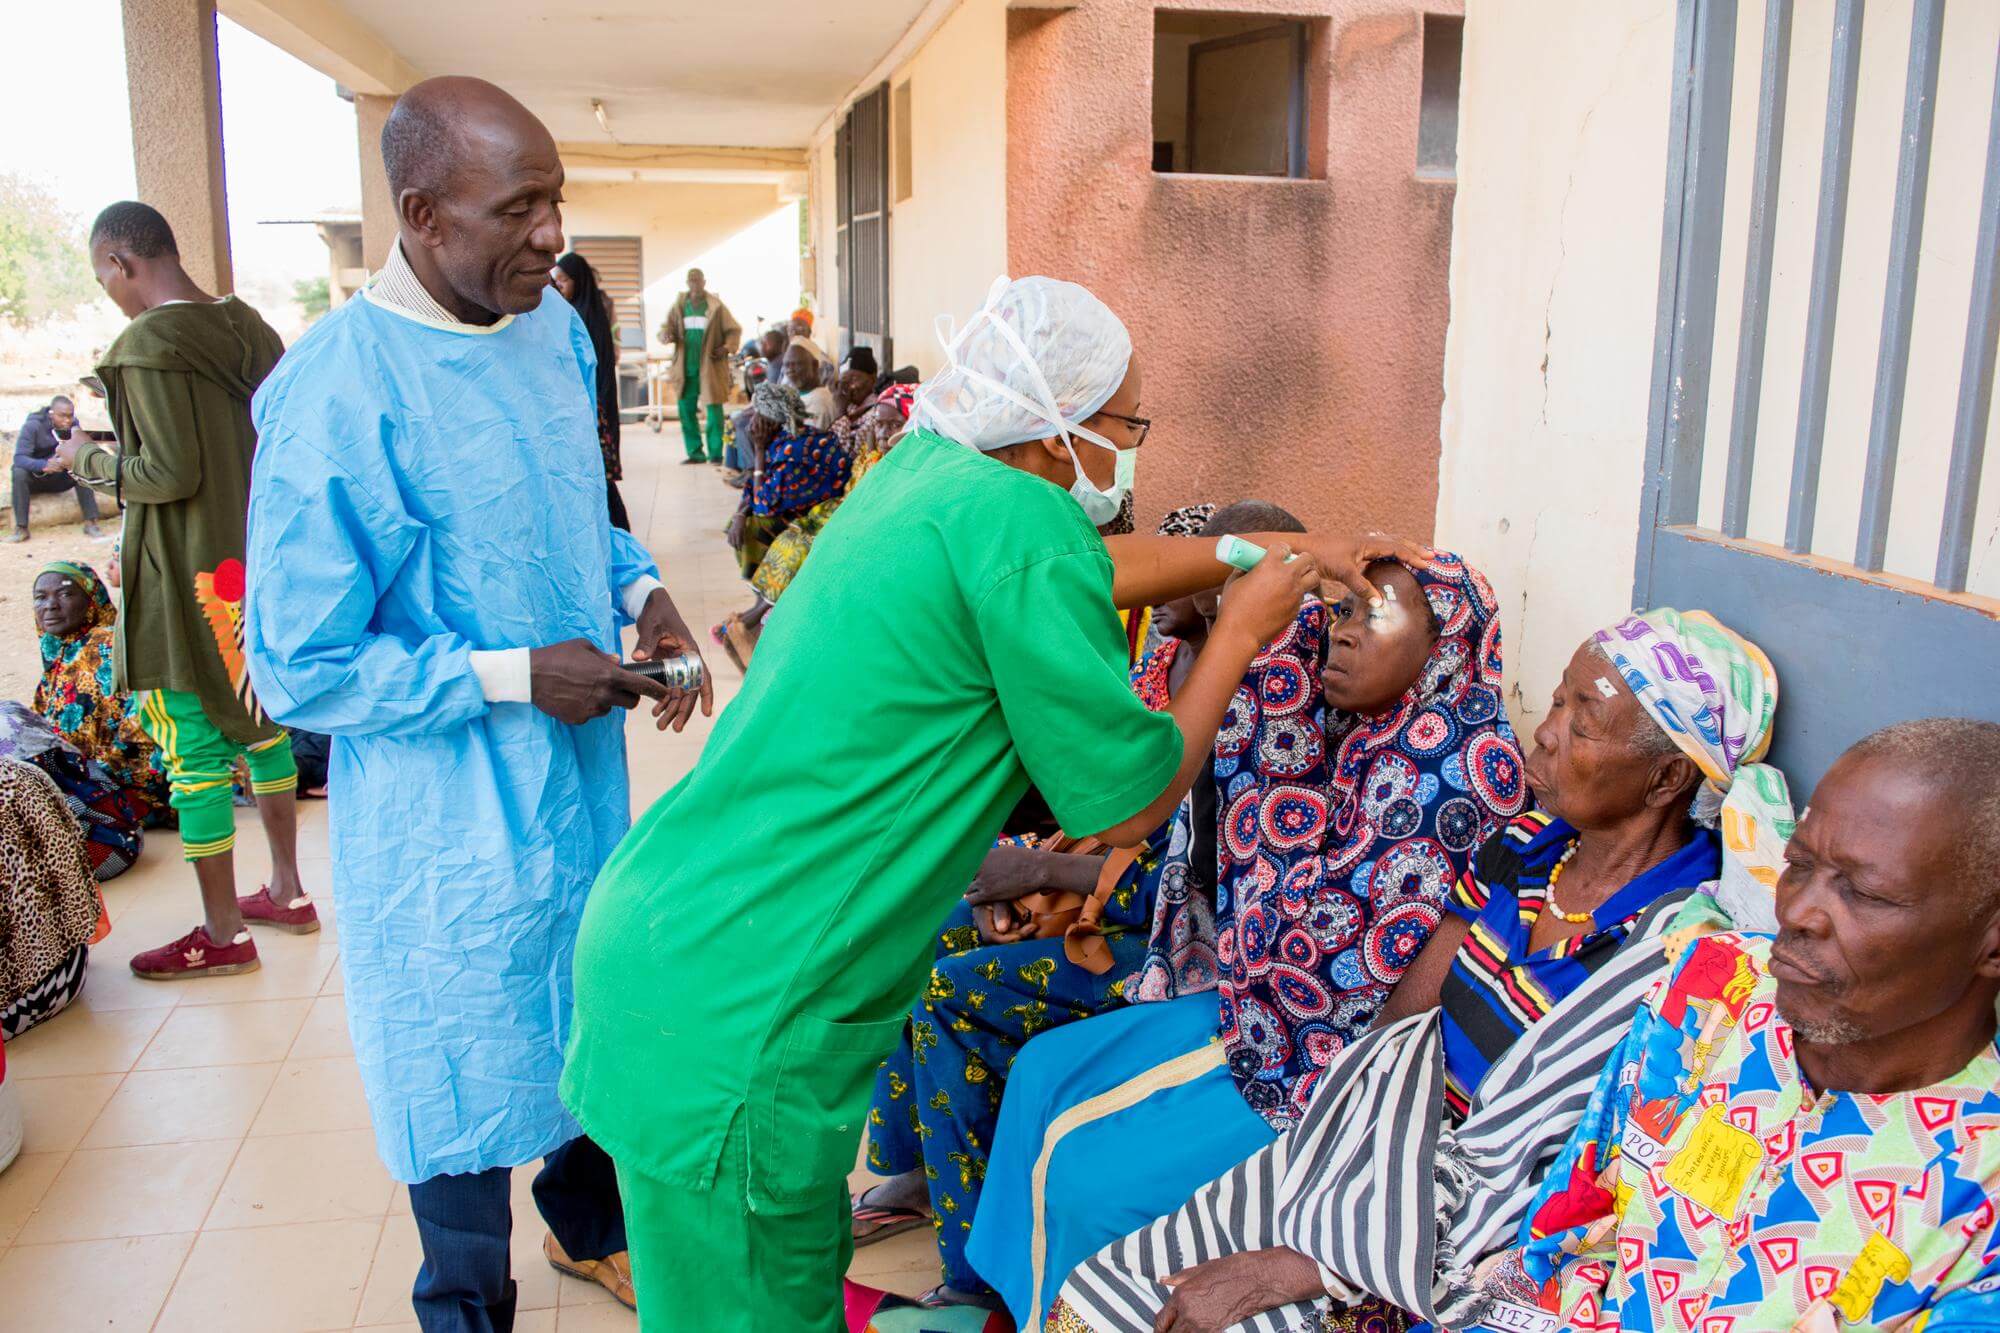 Eine Krankenpflegerin in einem grüner OP-Kleidung untersucht die Augen von Frauen, die bei einem mobilen Einsatz operiert werden sollen. (c) KIO Photography